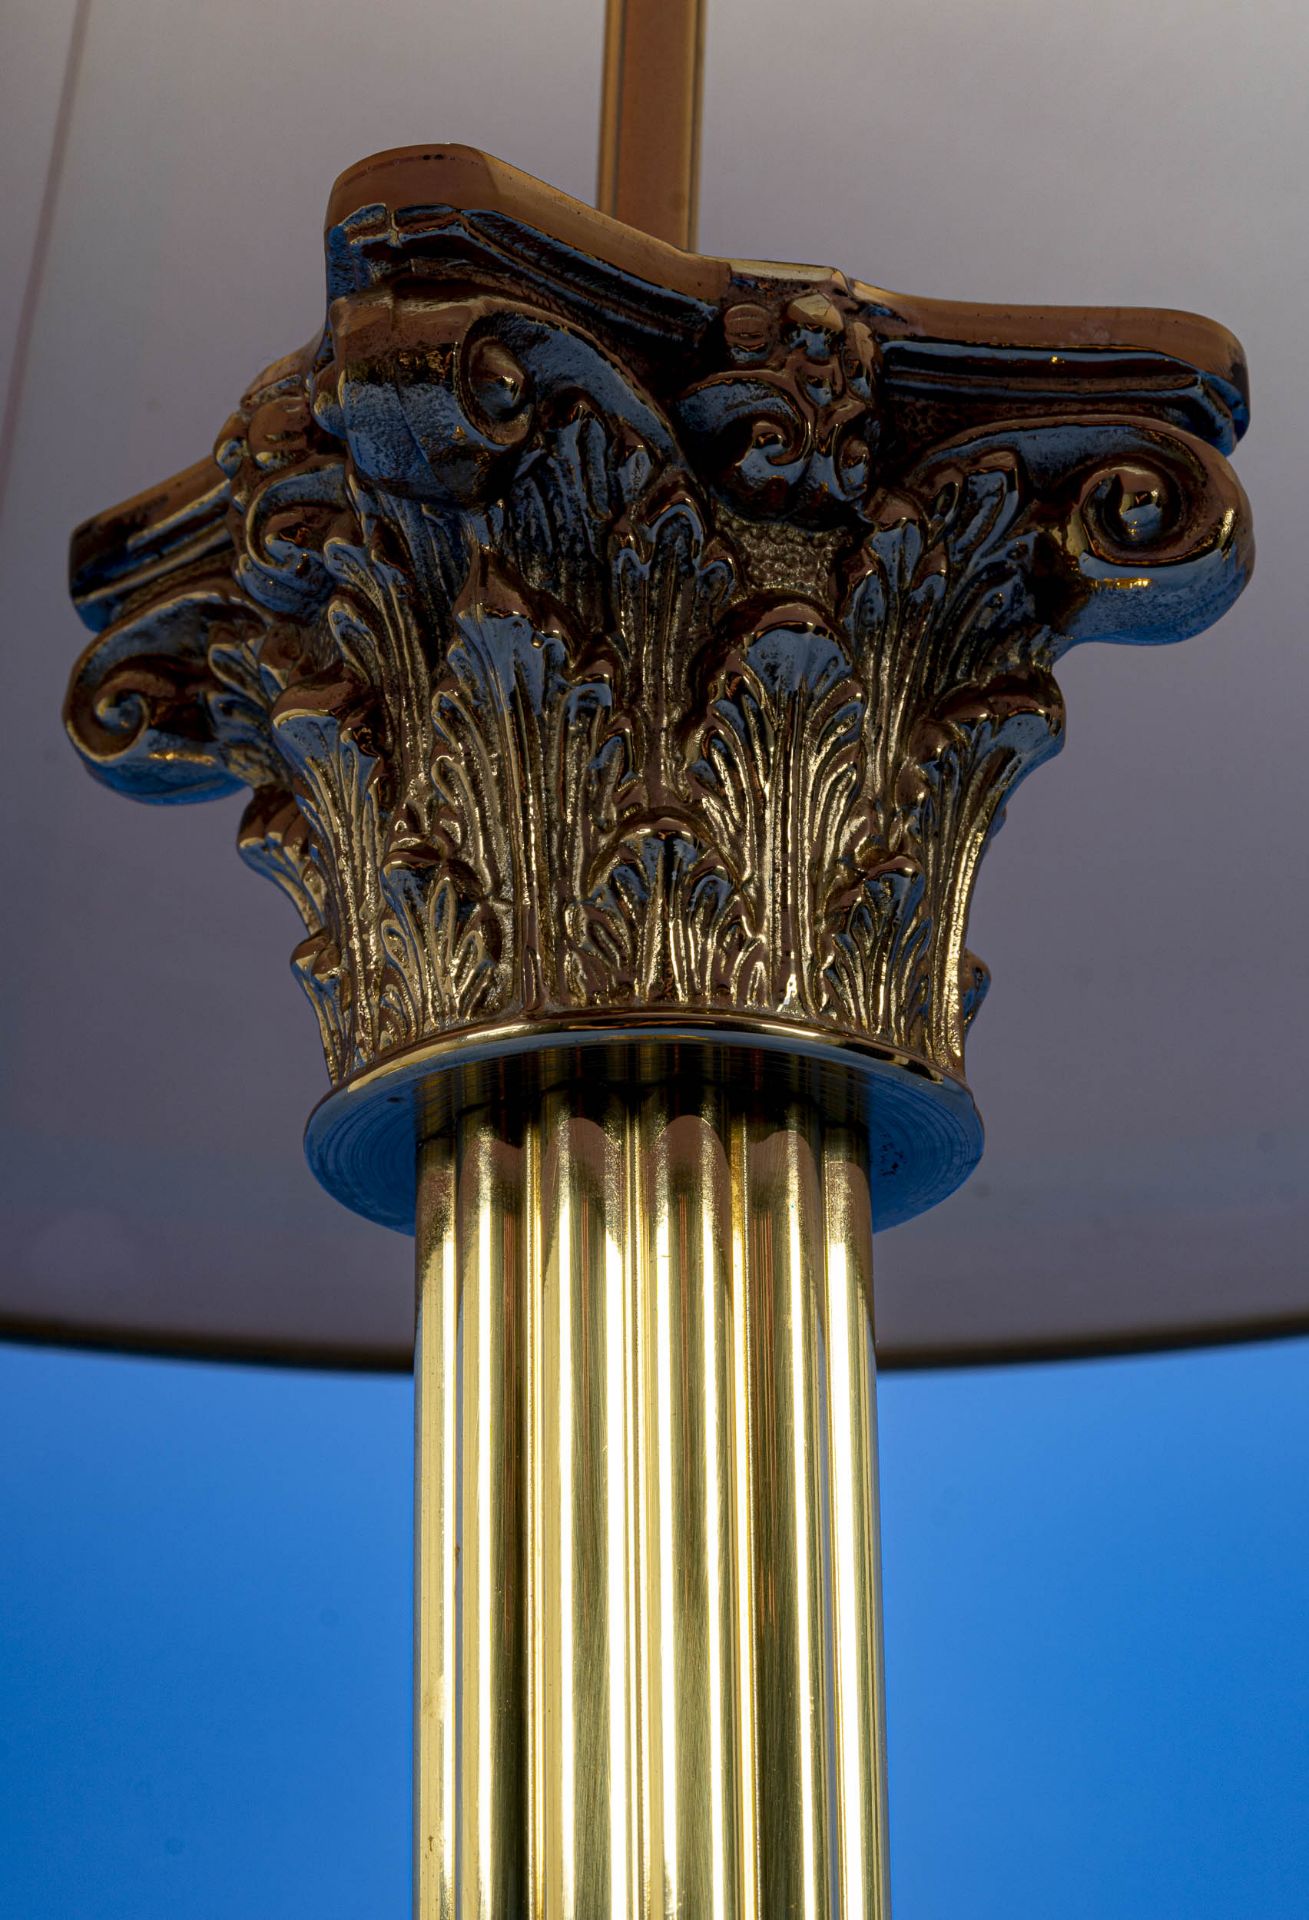 Stilvolle Tischlampe, Messing, Säulenform, plastisch ausgearbeitetes Kapitell, klassische Formgebun - Bild 5 aus 6